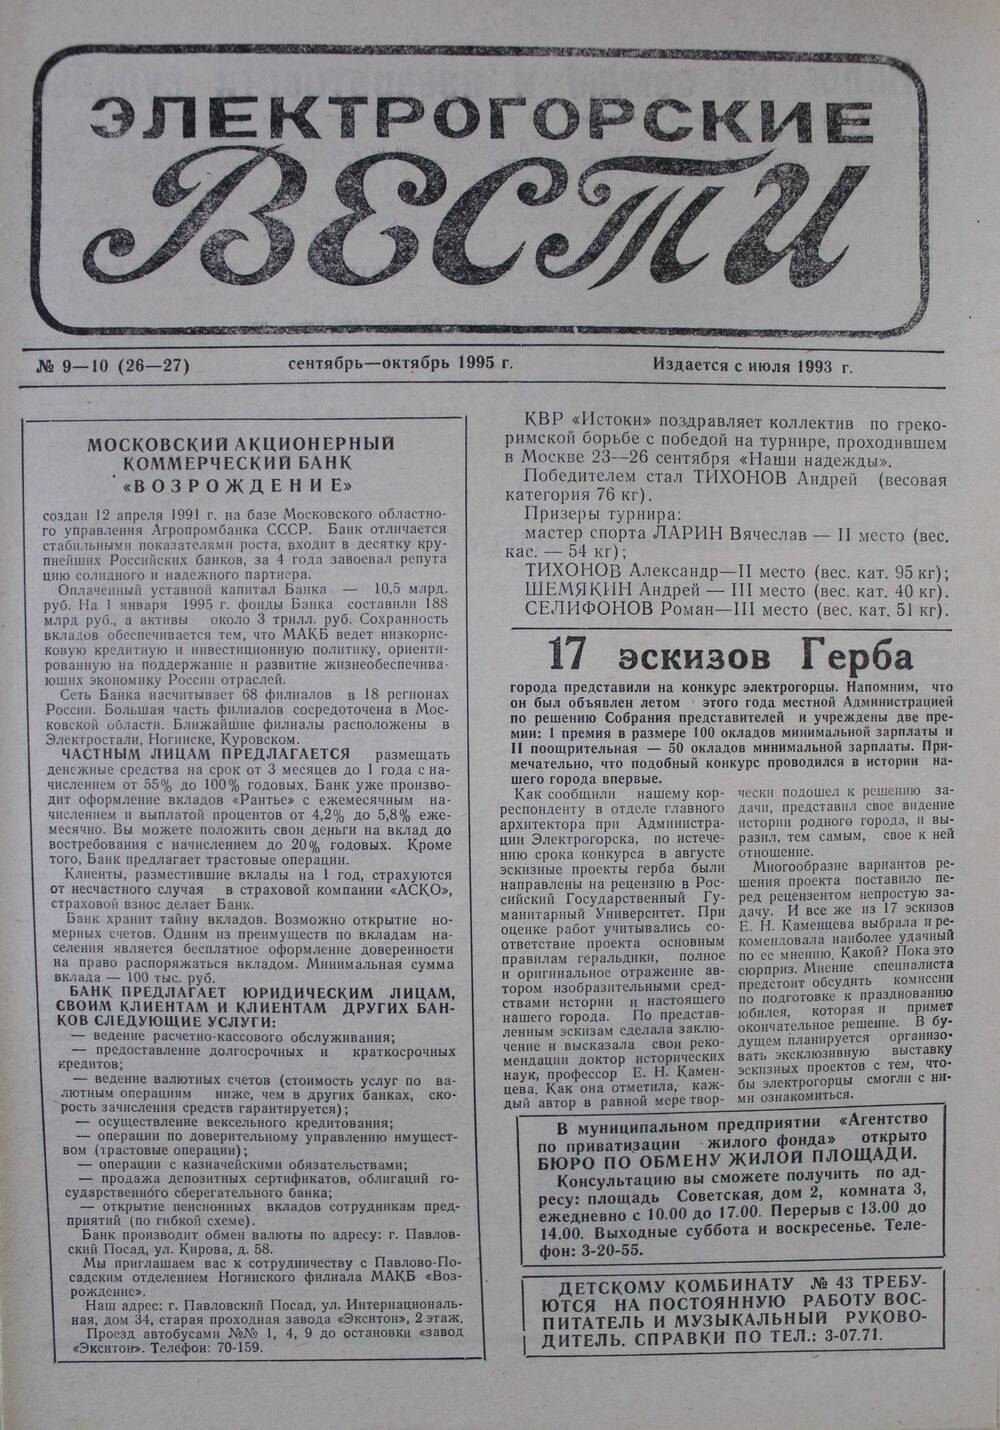 Газета Электрогорские вести №9-10 (26 - 27) сентябрь-октябрь 1995 г.